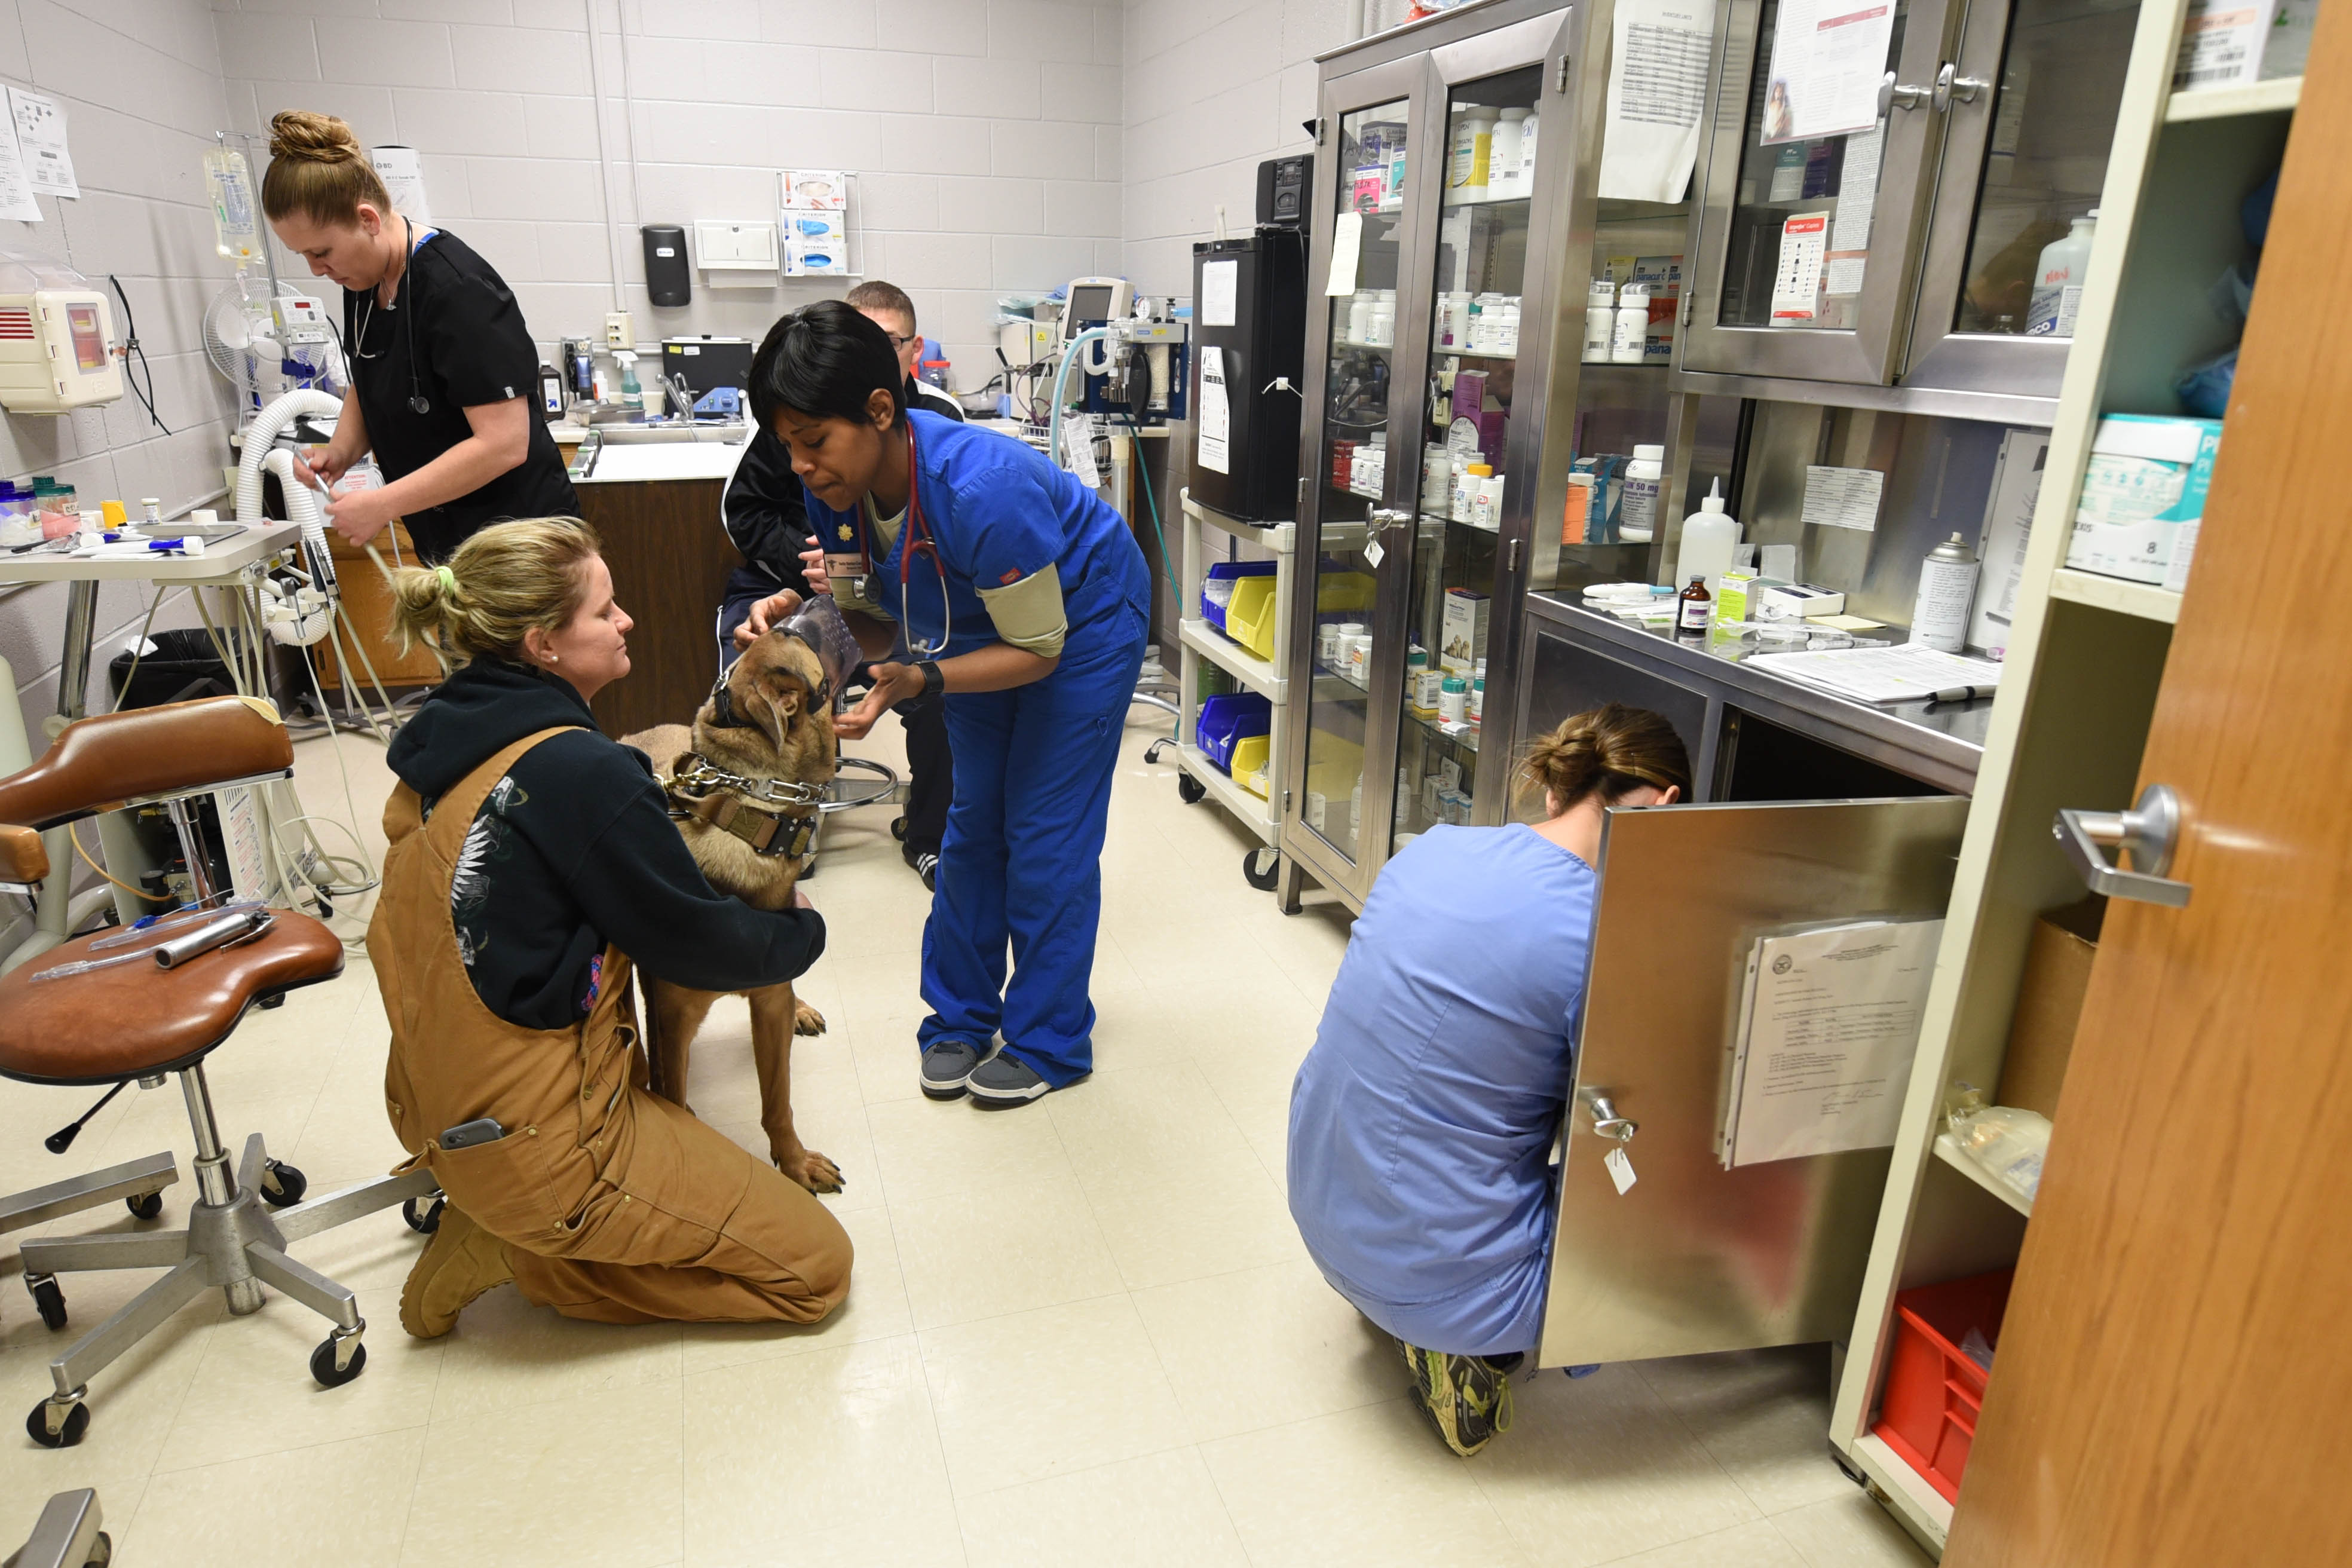 vet checking a dog